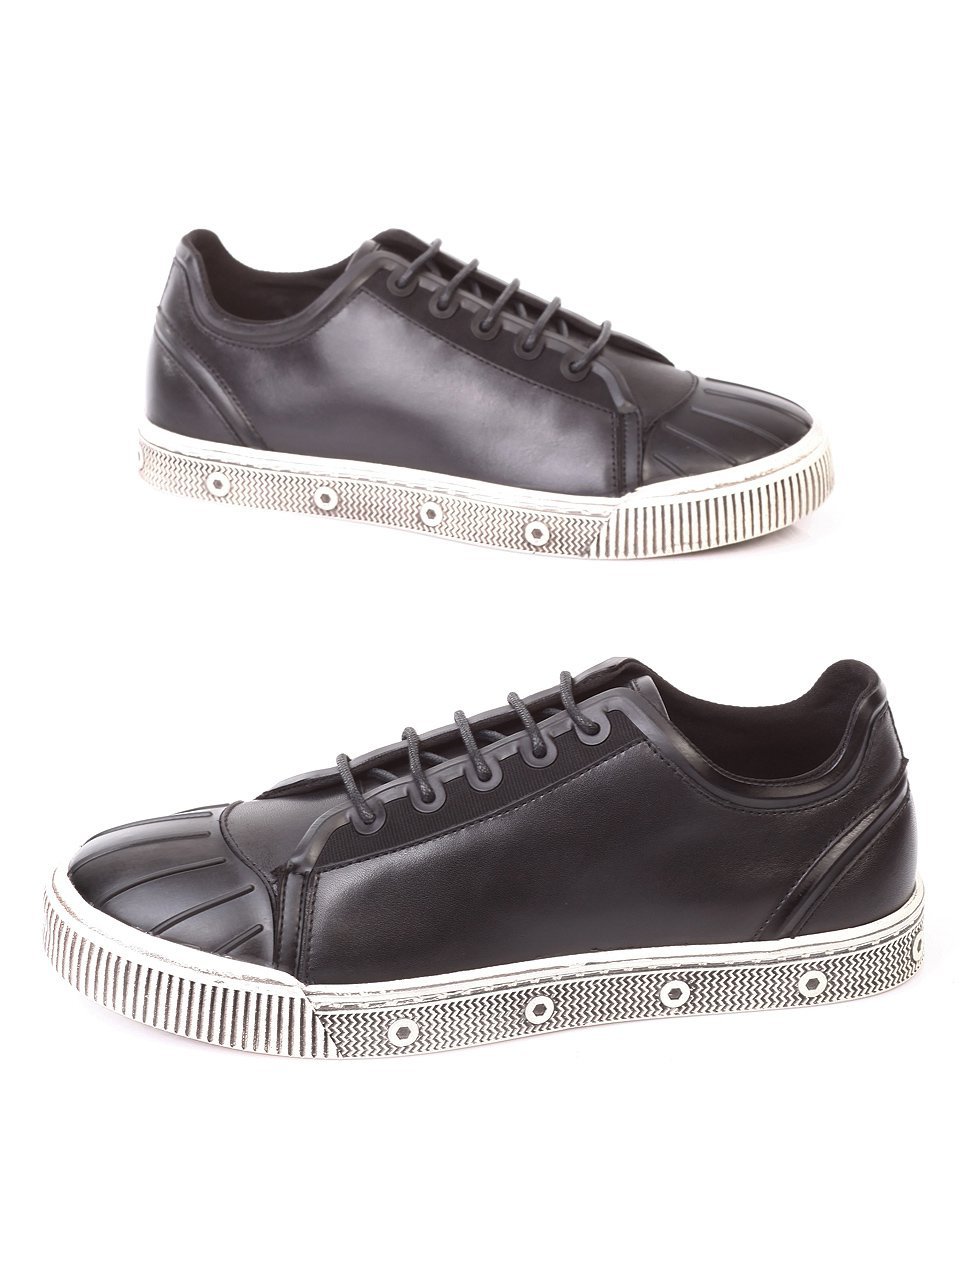 Ежедневни мъжки обувки от естествена кожа в черно 7N-17833 black